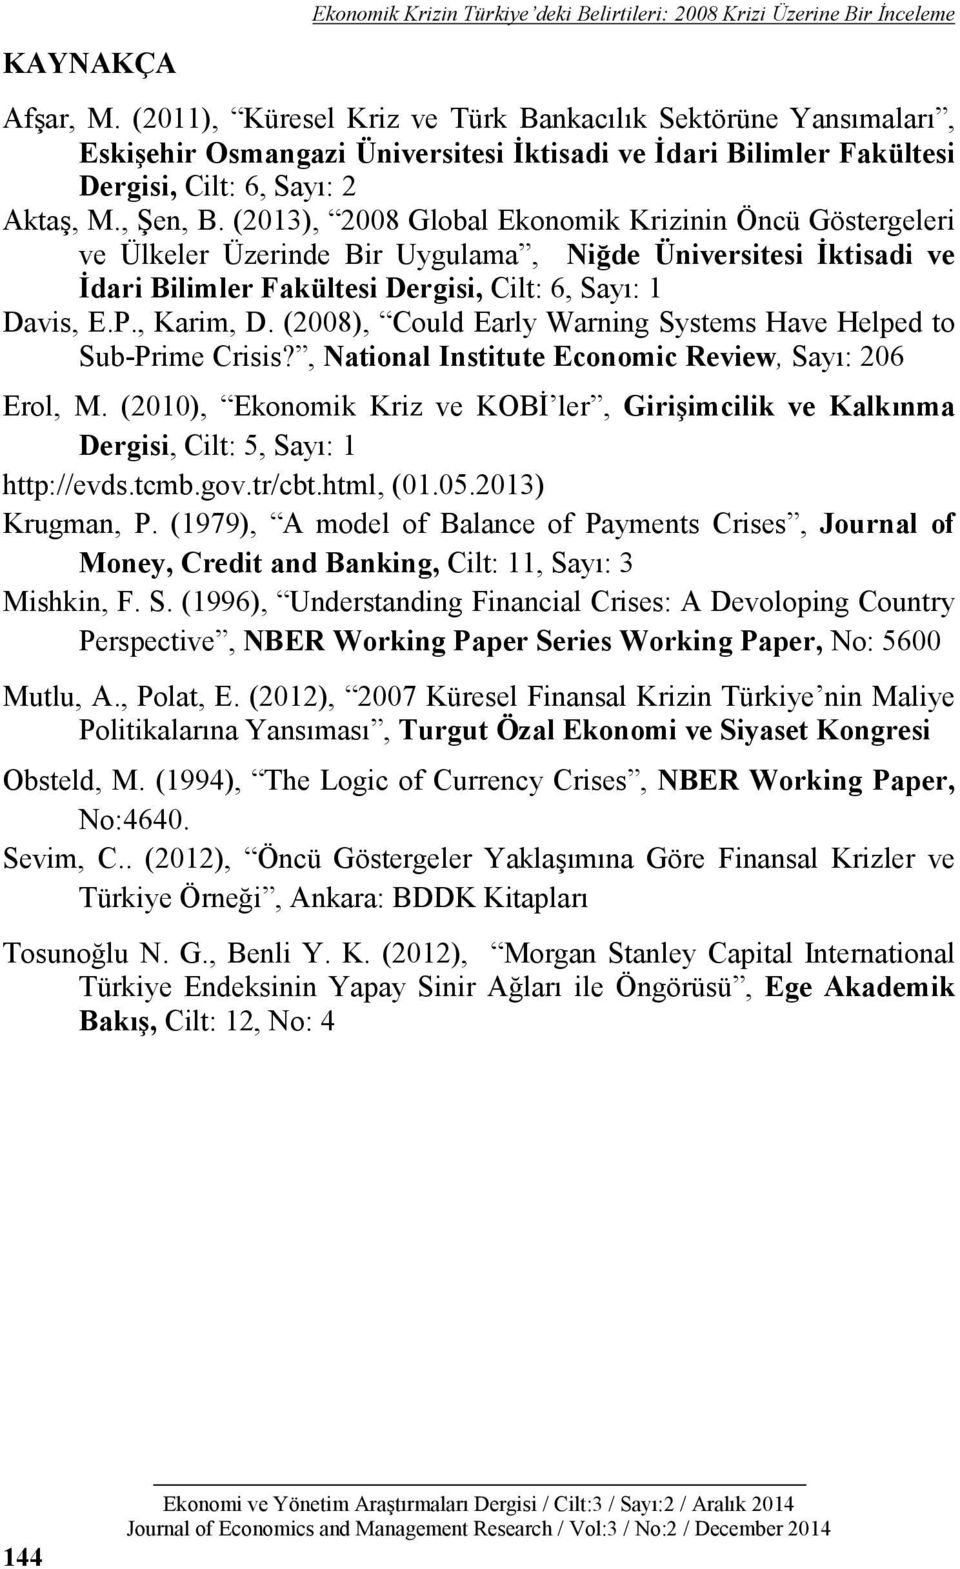 (2013), 2008 Global Ekonomik Krizinin Öncü Göstergeleri ve Ülkeler Üzerinde Bir Uygulama, Niğde Üniversitesi İktisadi ve İdari Bilimler Fakültesi Dergisi, Cilt: 6, Sayı: 1 Davis, E.P., Karim, D.